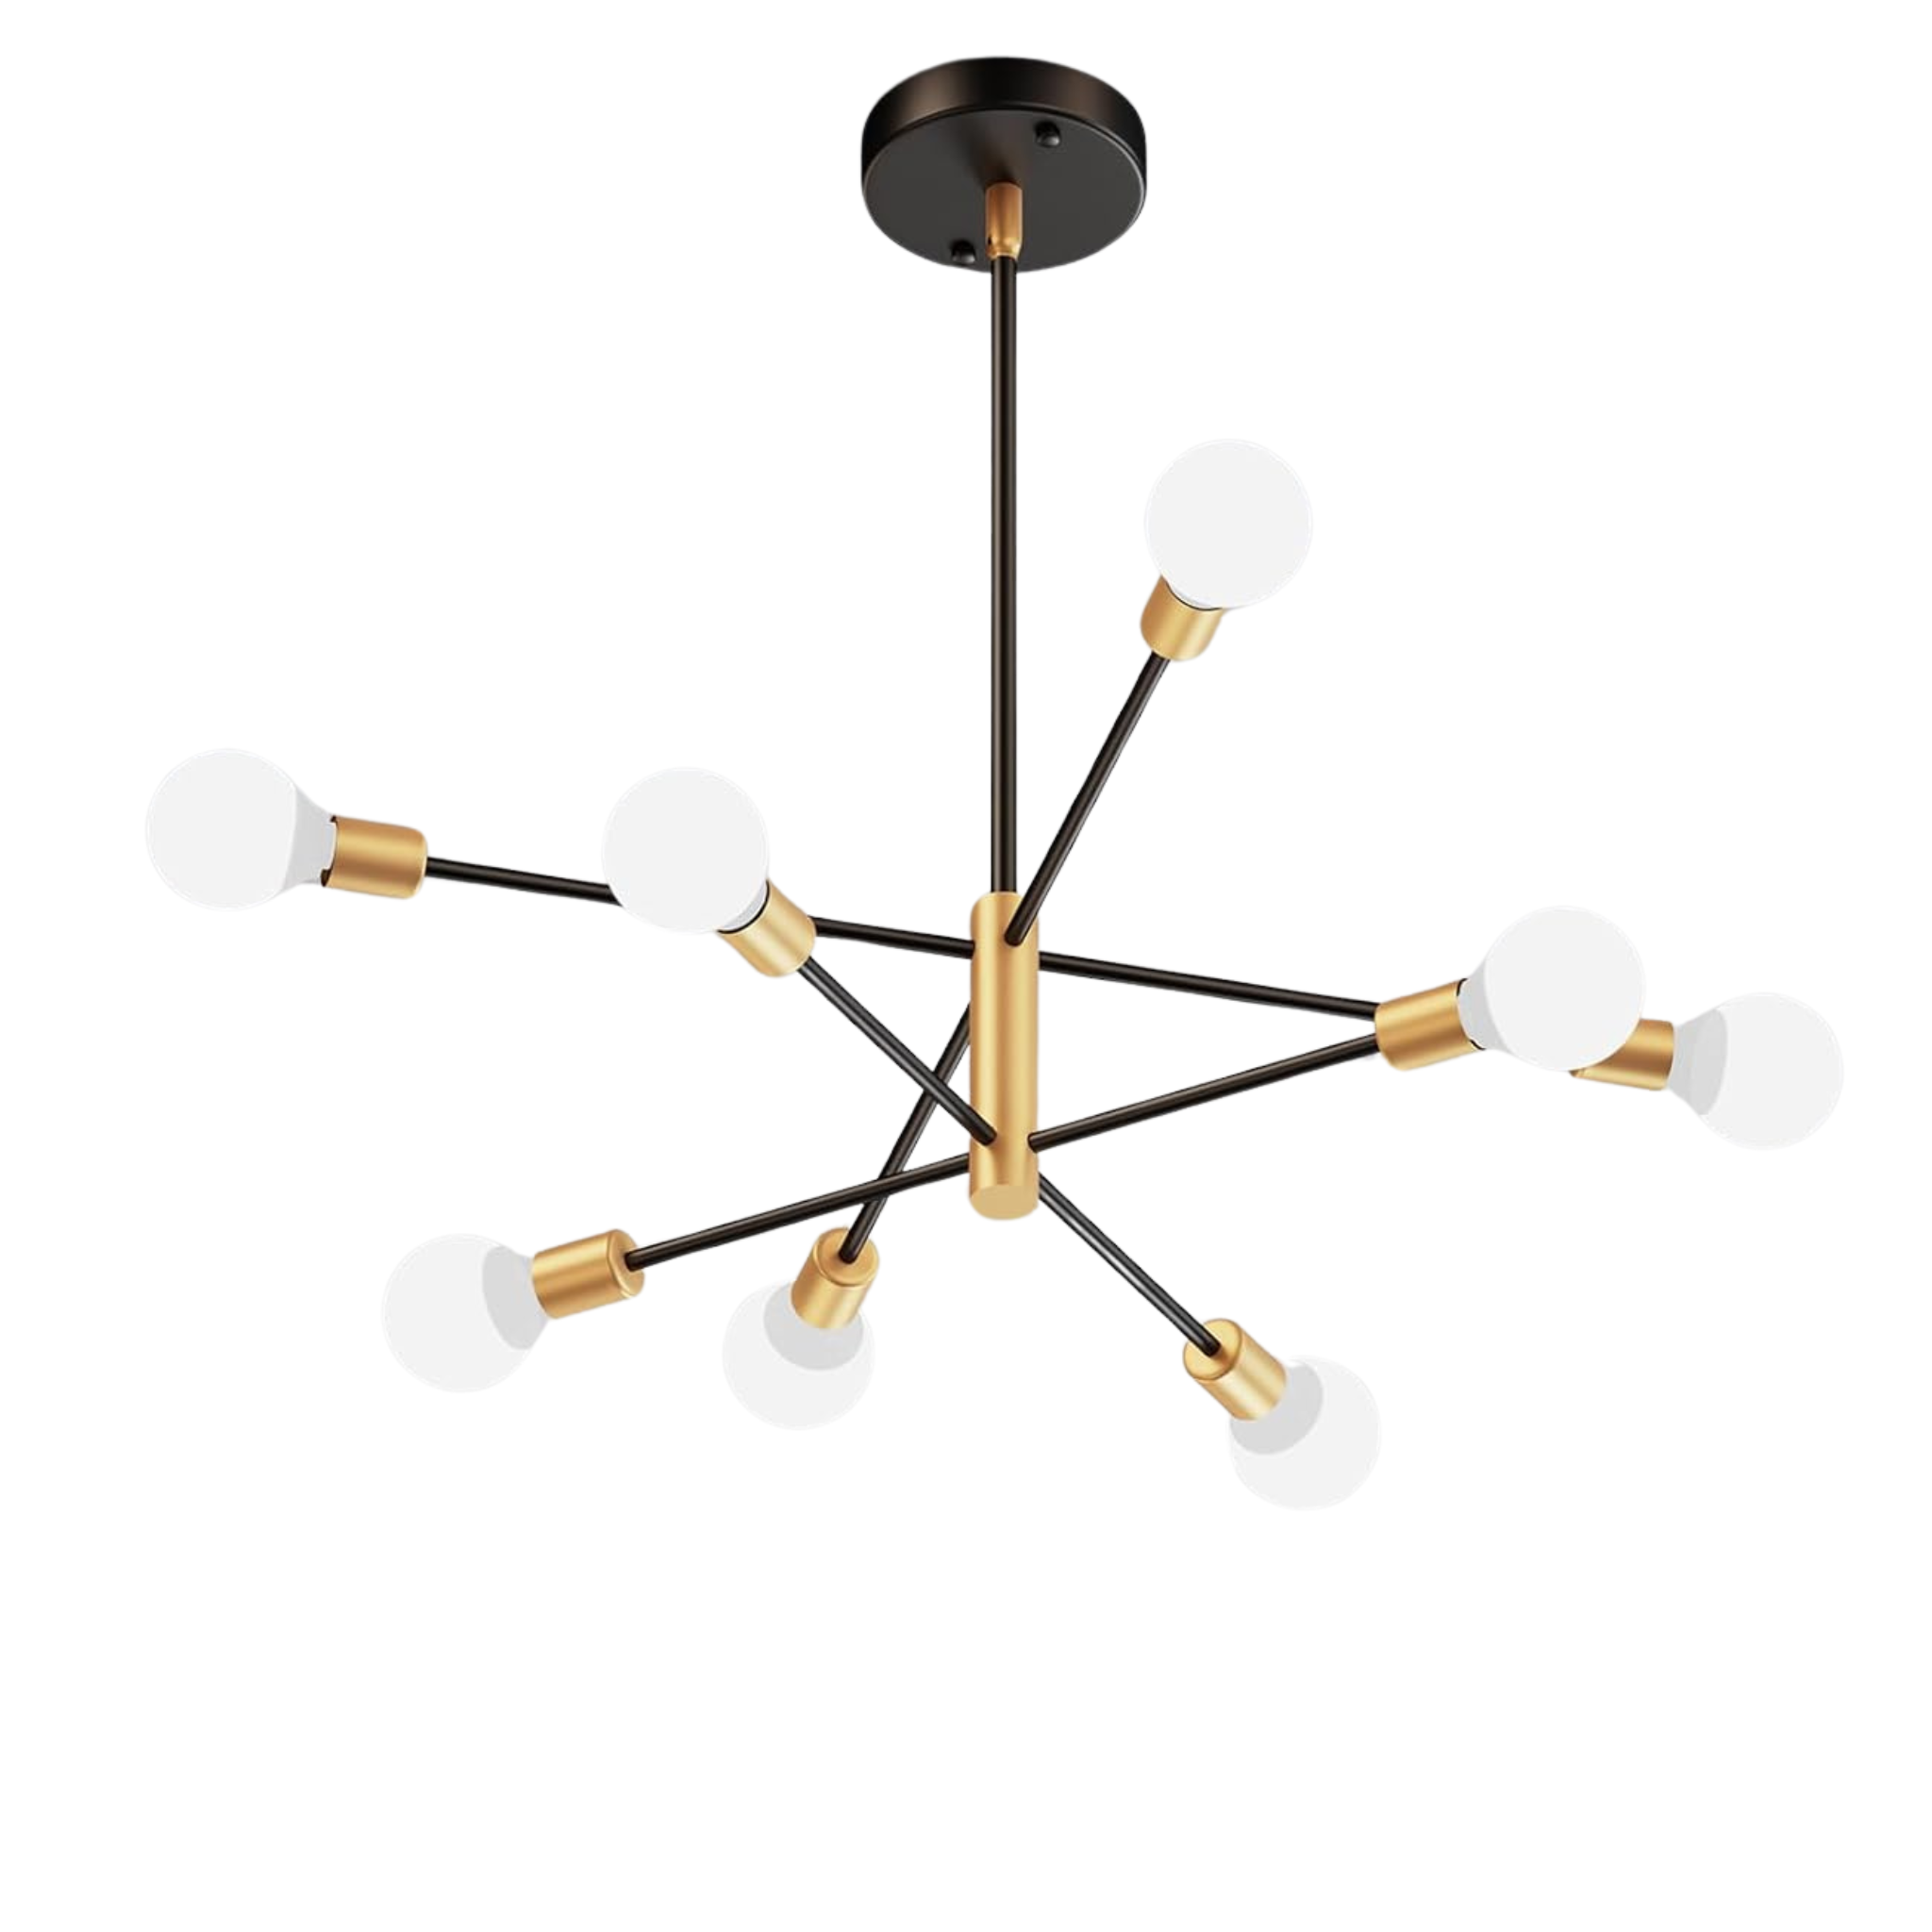 Modern Black and Gold Sputnik Ceiling Light Fixture